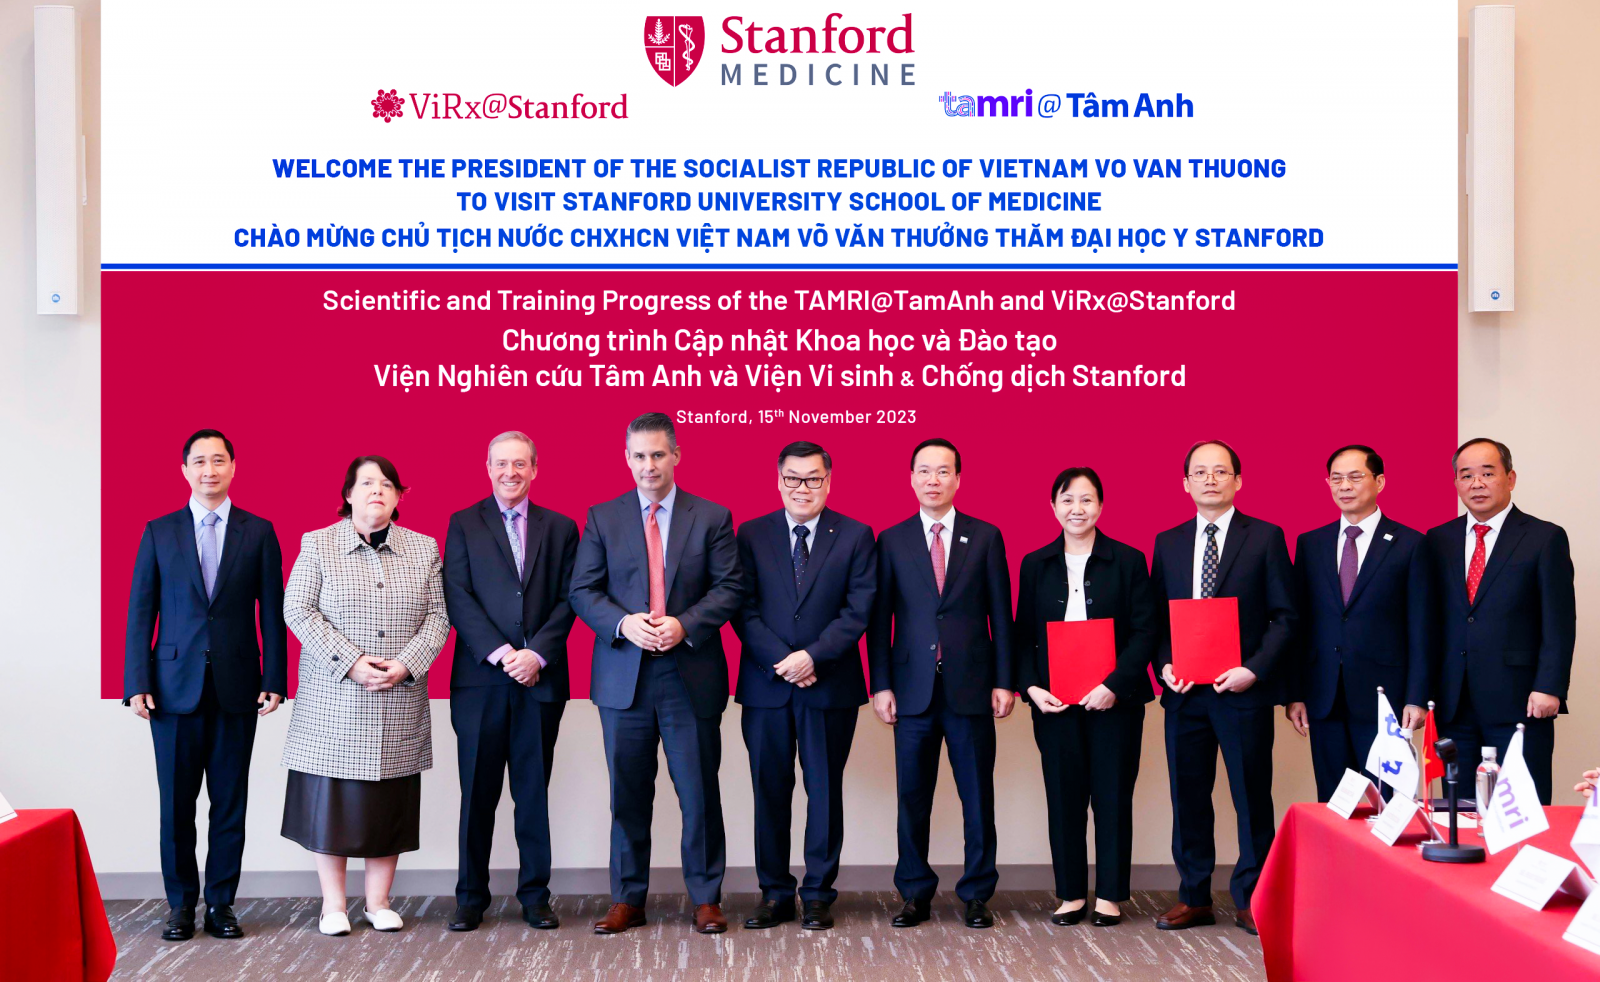 Chủ tịch nước Võ Văn Thưởng cùng đoàn lãnh đạo Việt Nam đến thăm Đại học Stanford và chứng kiến công bố đào tạo xét nghiệm viêm gan D đầu tiên cho Việt Nam. Ảnh: Hoàng Thống Nhất